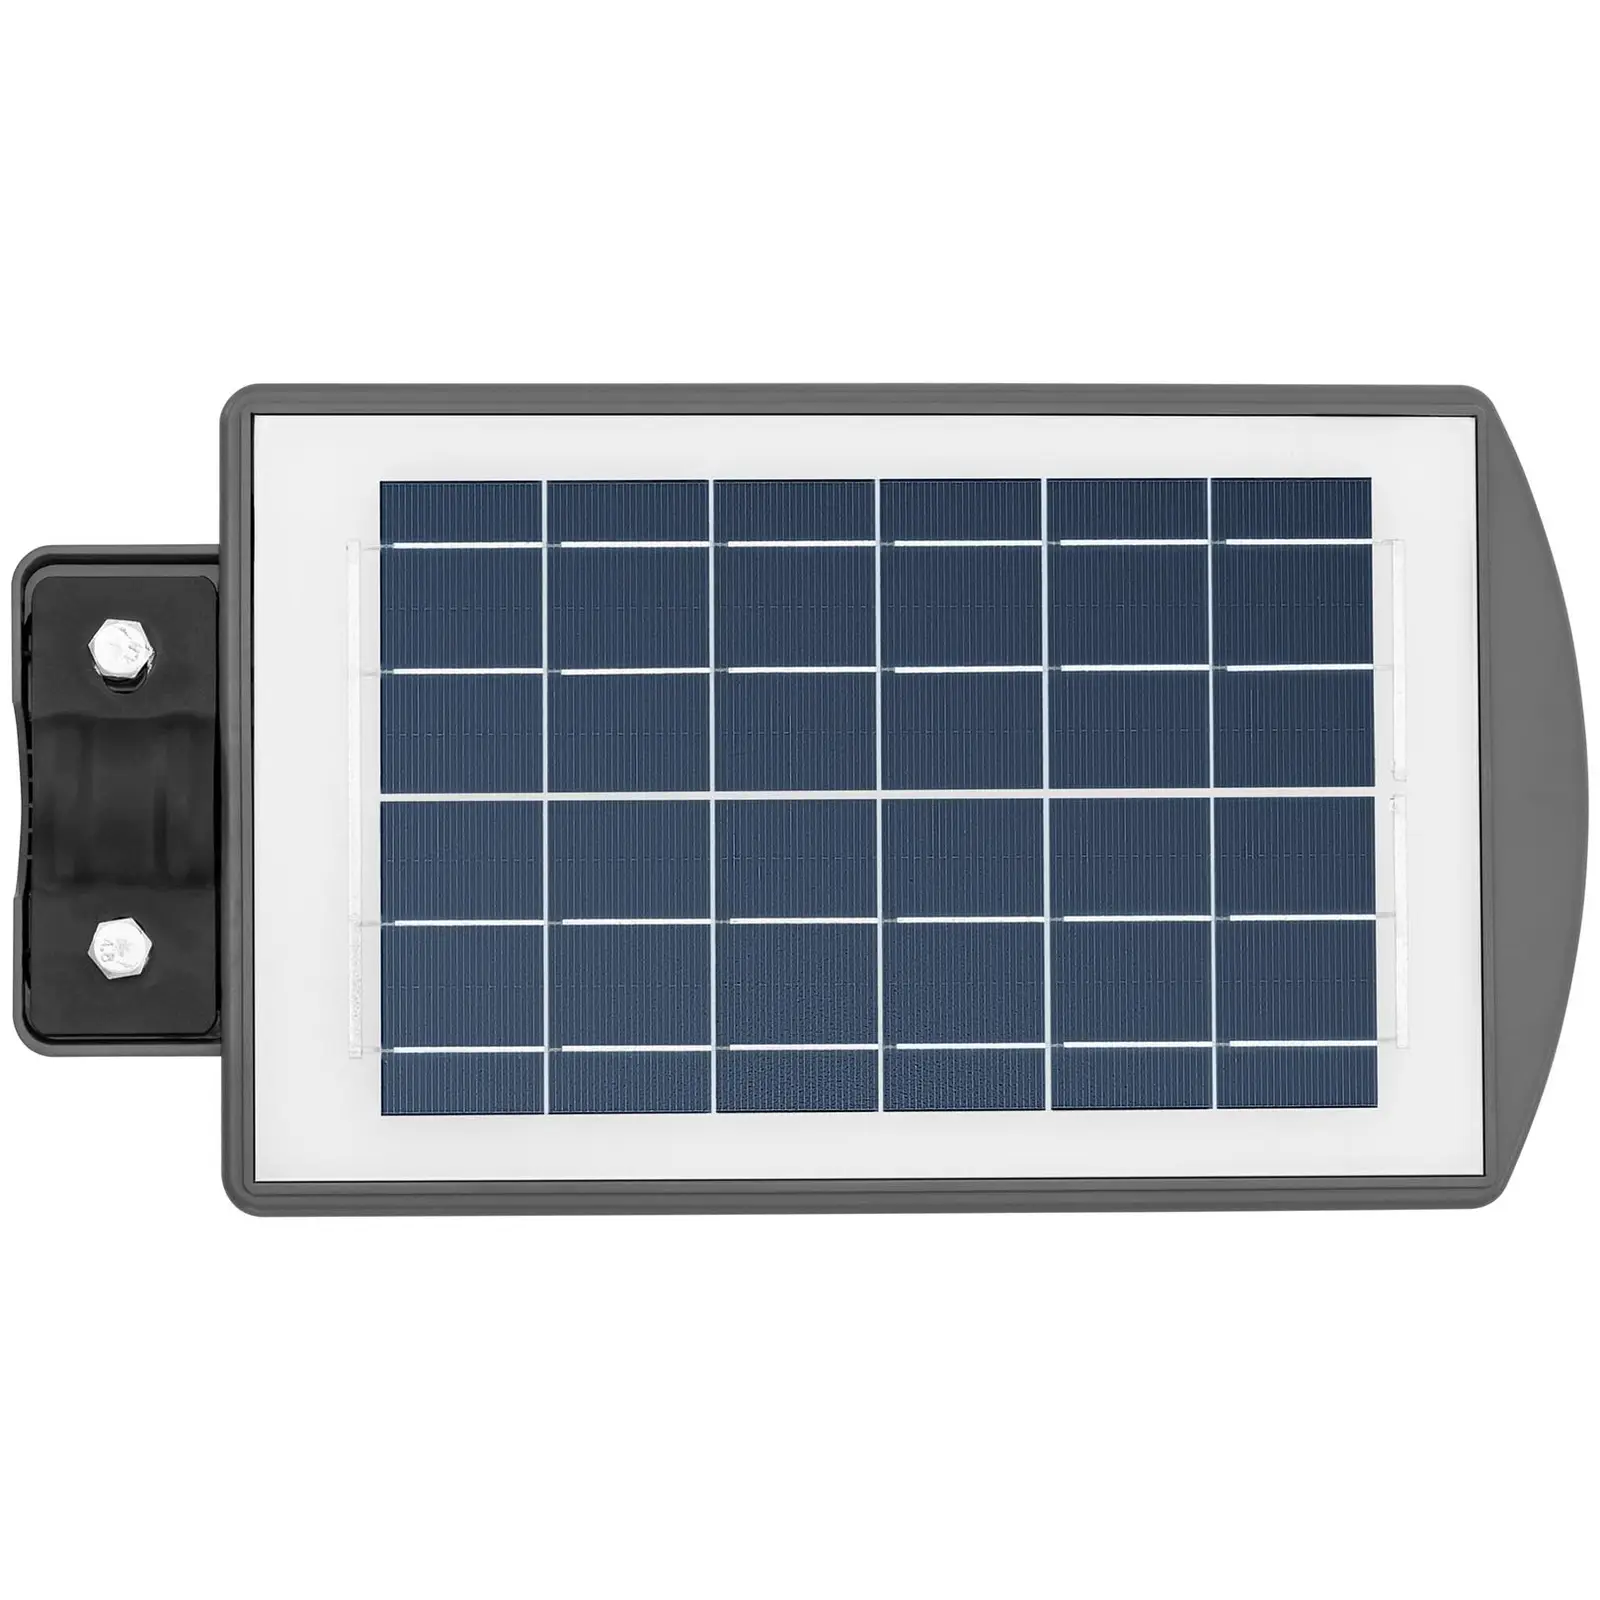 Lampione solare per esterni - Con sensore di movimento - 100 W - 6000 - 6500 K - 14 - 16 h - IP54